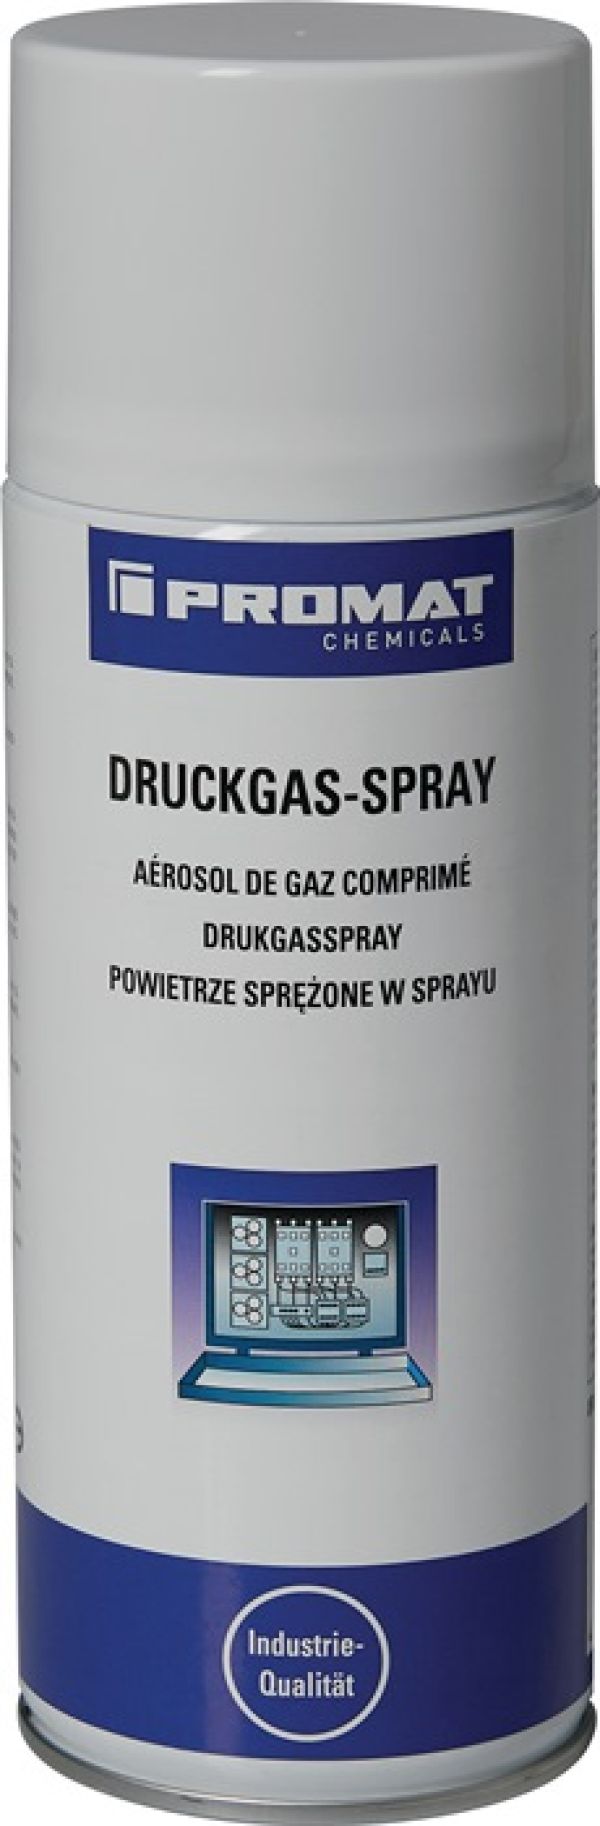 Druckgasspray 400 ml Spraydose PROMAT CHEMICALS